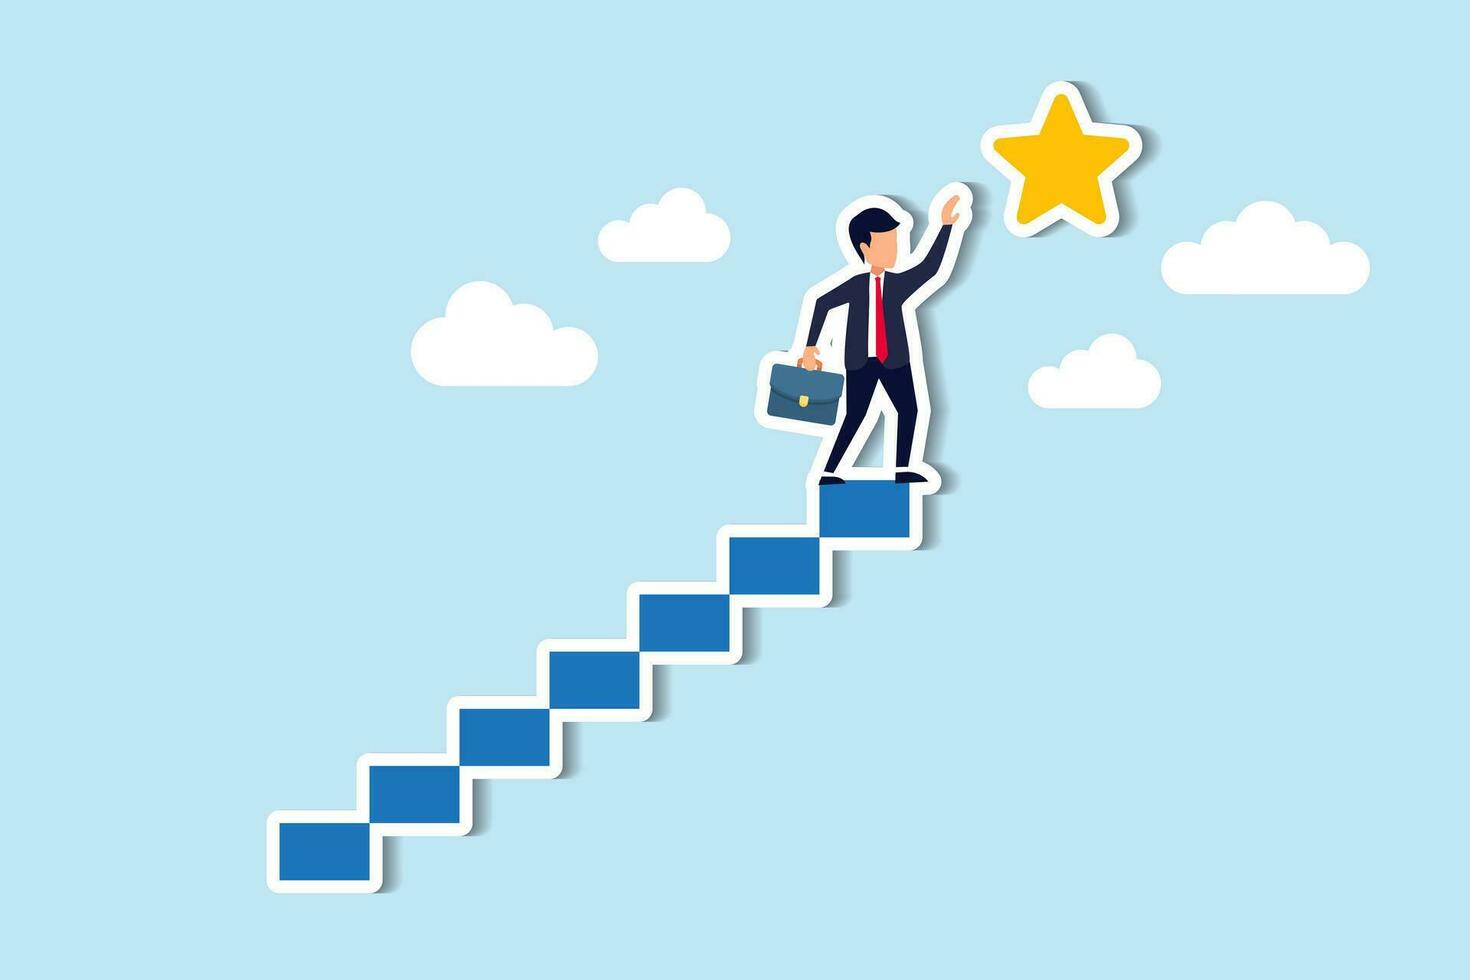 esperança de sucesso nos negócios, realização ou alcance de objetivo de negócios, conceito de recompensa e motivação, empresário confiante e inteligente sobe a escada até o topo para alcançar a preciosa recompensa em estrela. vetor